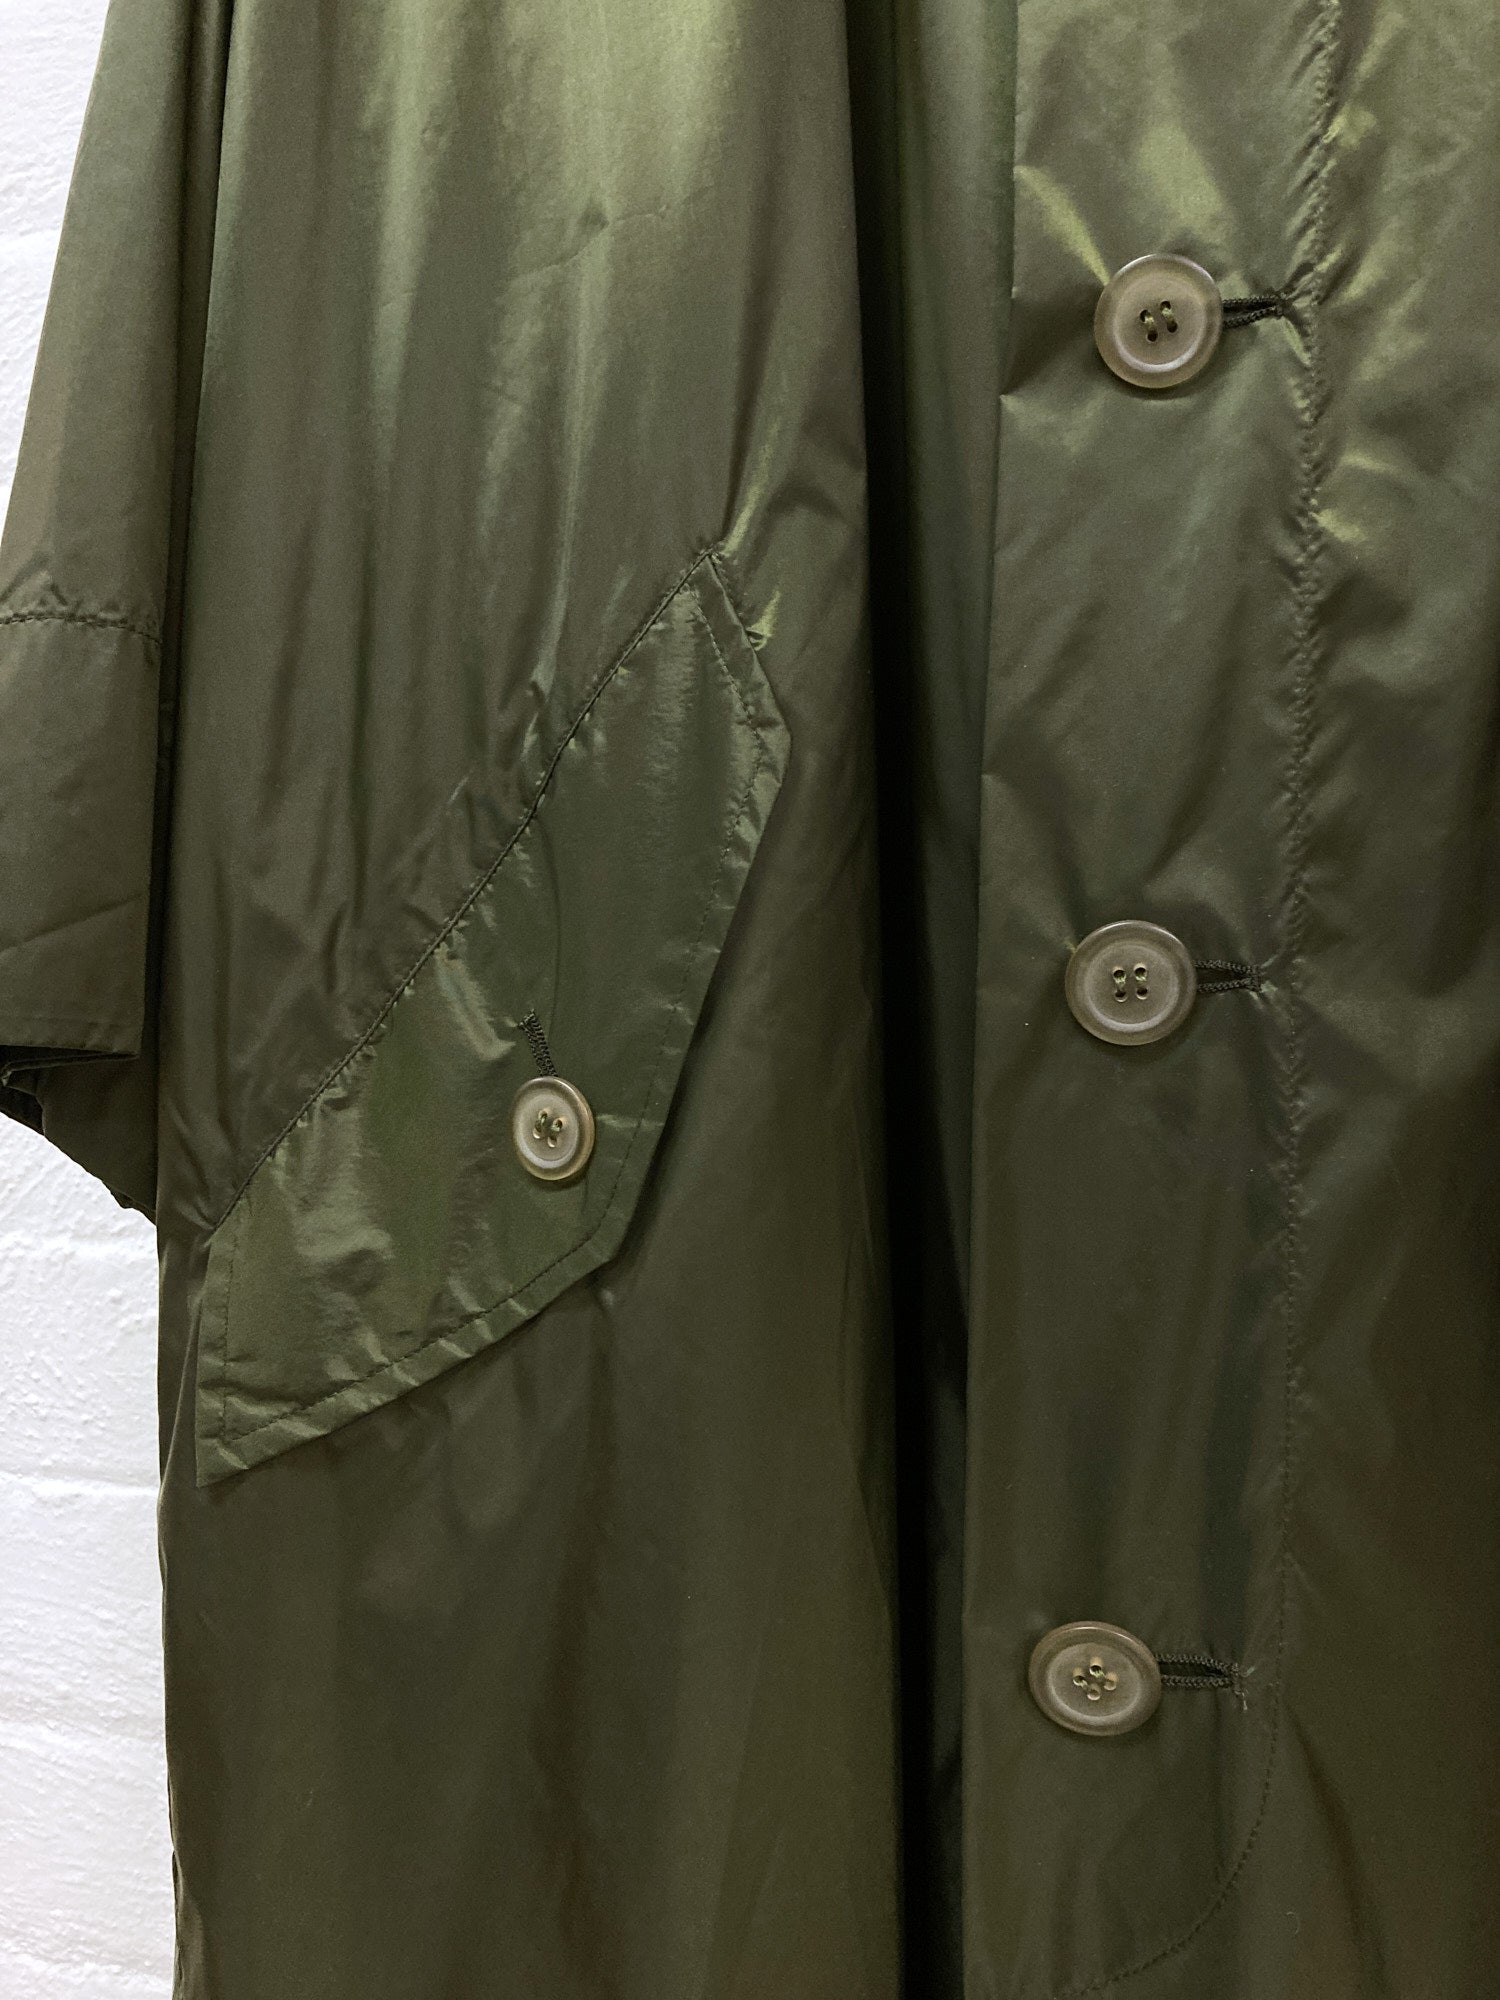 Issey Miyake Windcoat SS2000 shiny green nylon hooded rectangle coat - M